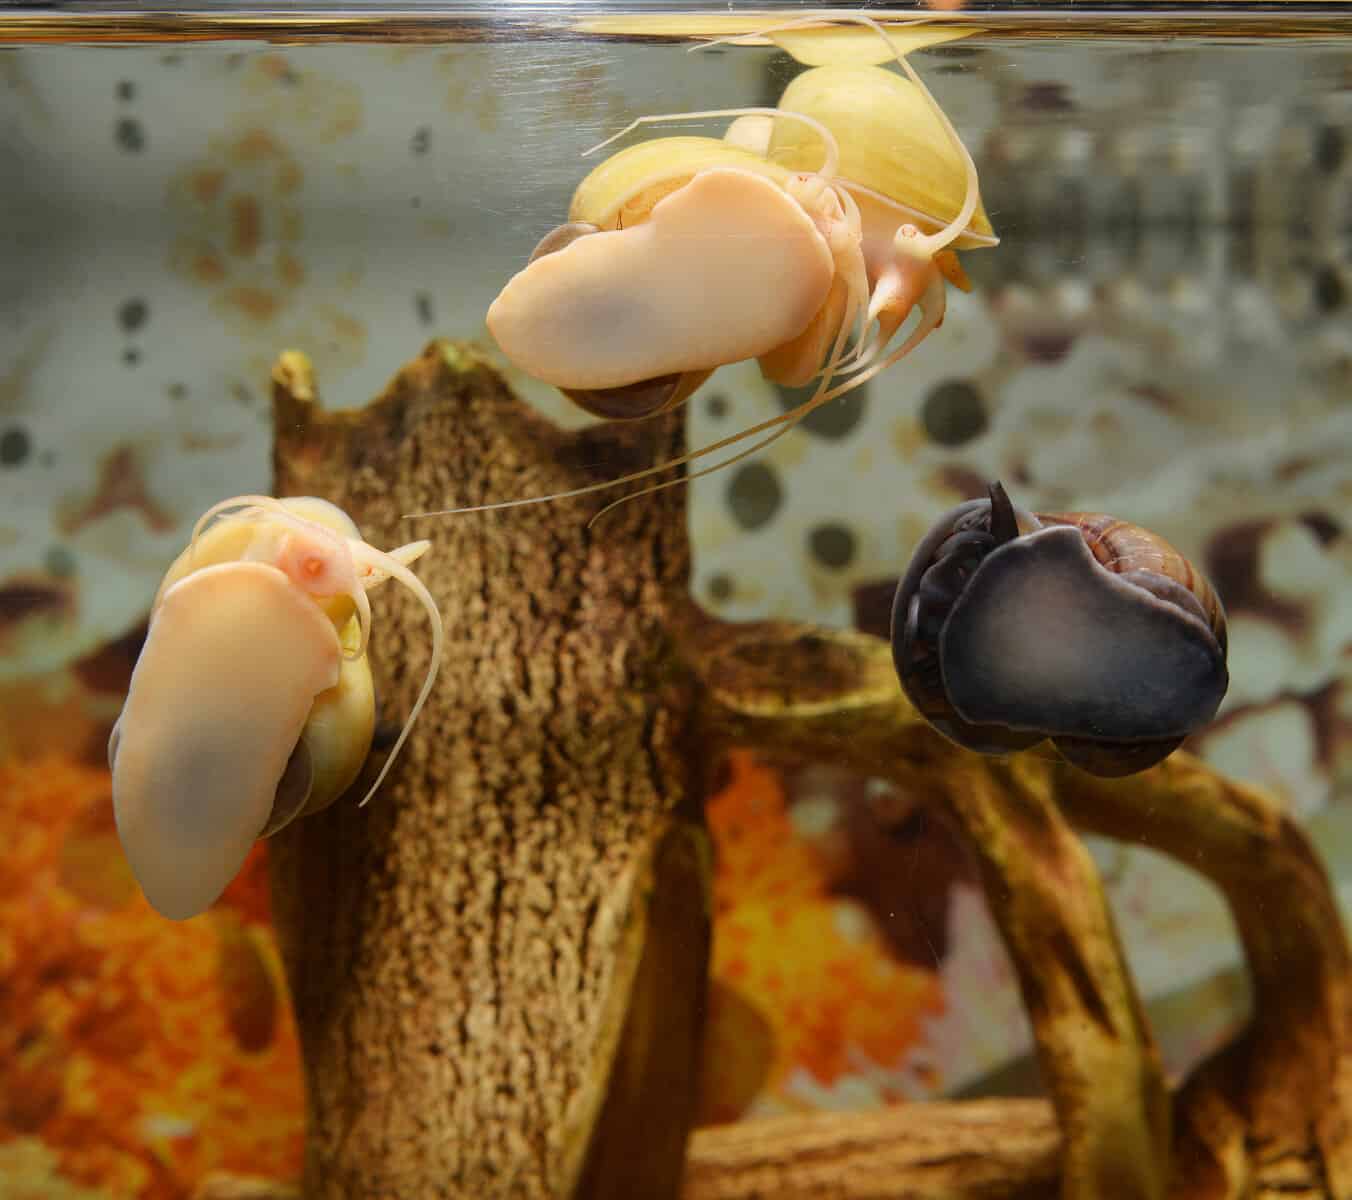 Apple Snail vs Mystery Snail